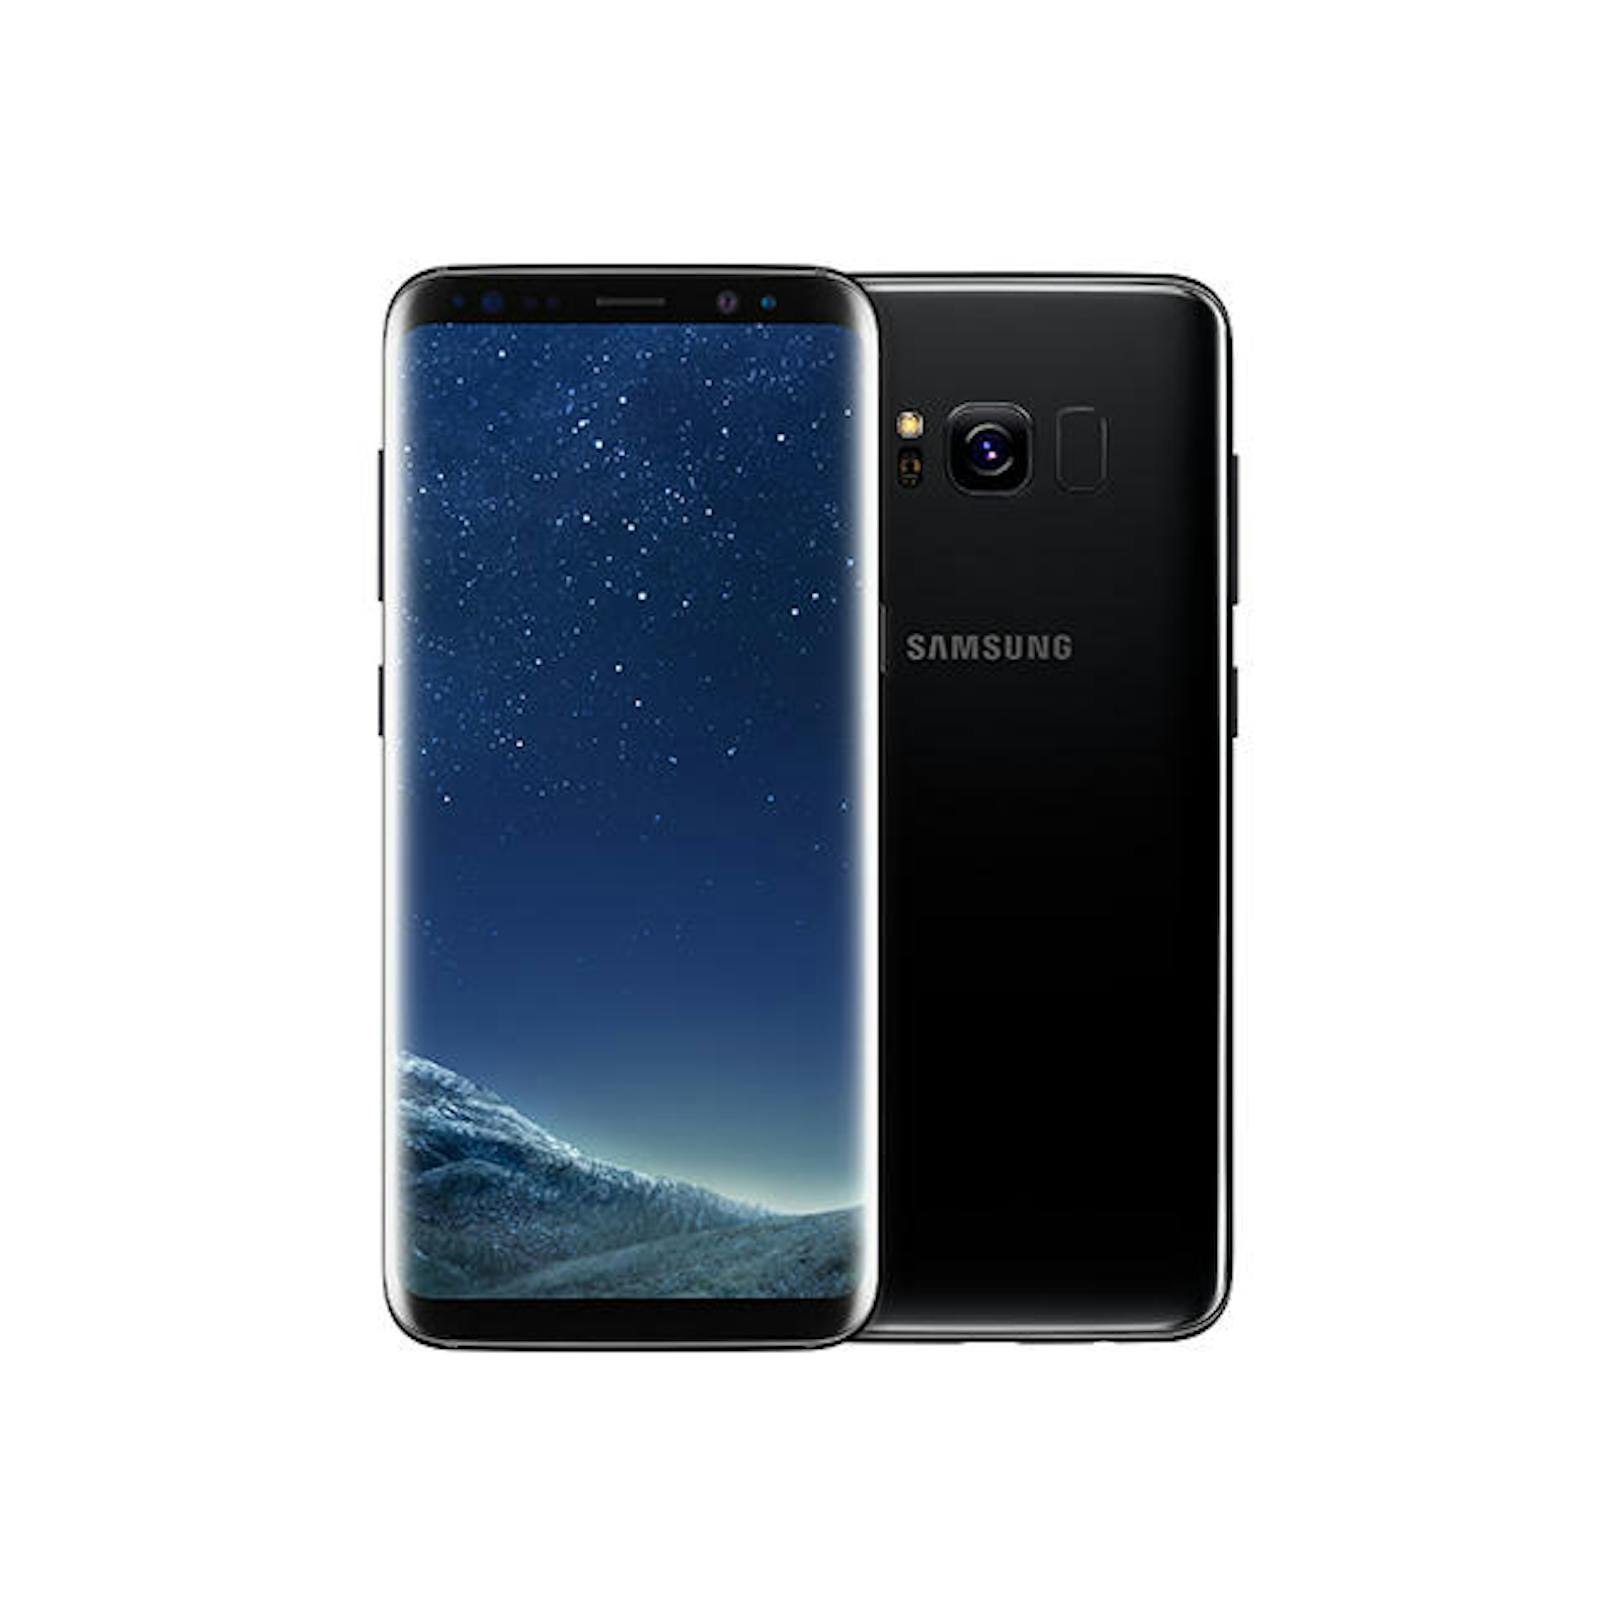 <b>Samsung Galaxy S8:</b> Beim Galaxy S8 und S8+ setzt Samsung ganz auf das sogenannte Infinity Display. Dieses kommt fast ohne Rand aus und ist etwas breiter, um bequem Videos und Filme anschauen zu können. Die Auflösung des 5,8 beziehungsweise 6,2 Zoll großen Displays beträgt 2960 x 1440 Pixel. <a href="https://www.heute.at/digital/multimedia/story/Galaxy-S8-ueberzeugt-mit-randlosem-Bildschirm-10032782">"Heute" titelte: Galaxy S8 überzeugt mit randlosem Bildschirm</a>